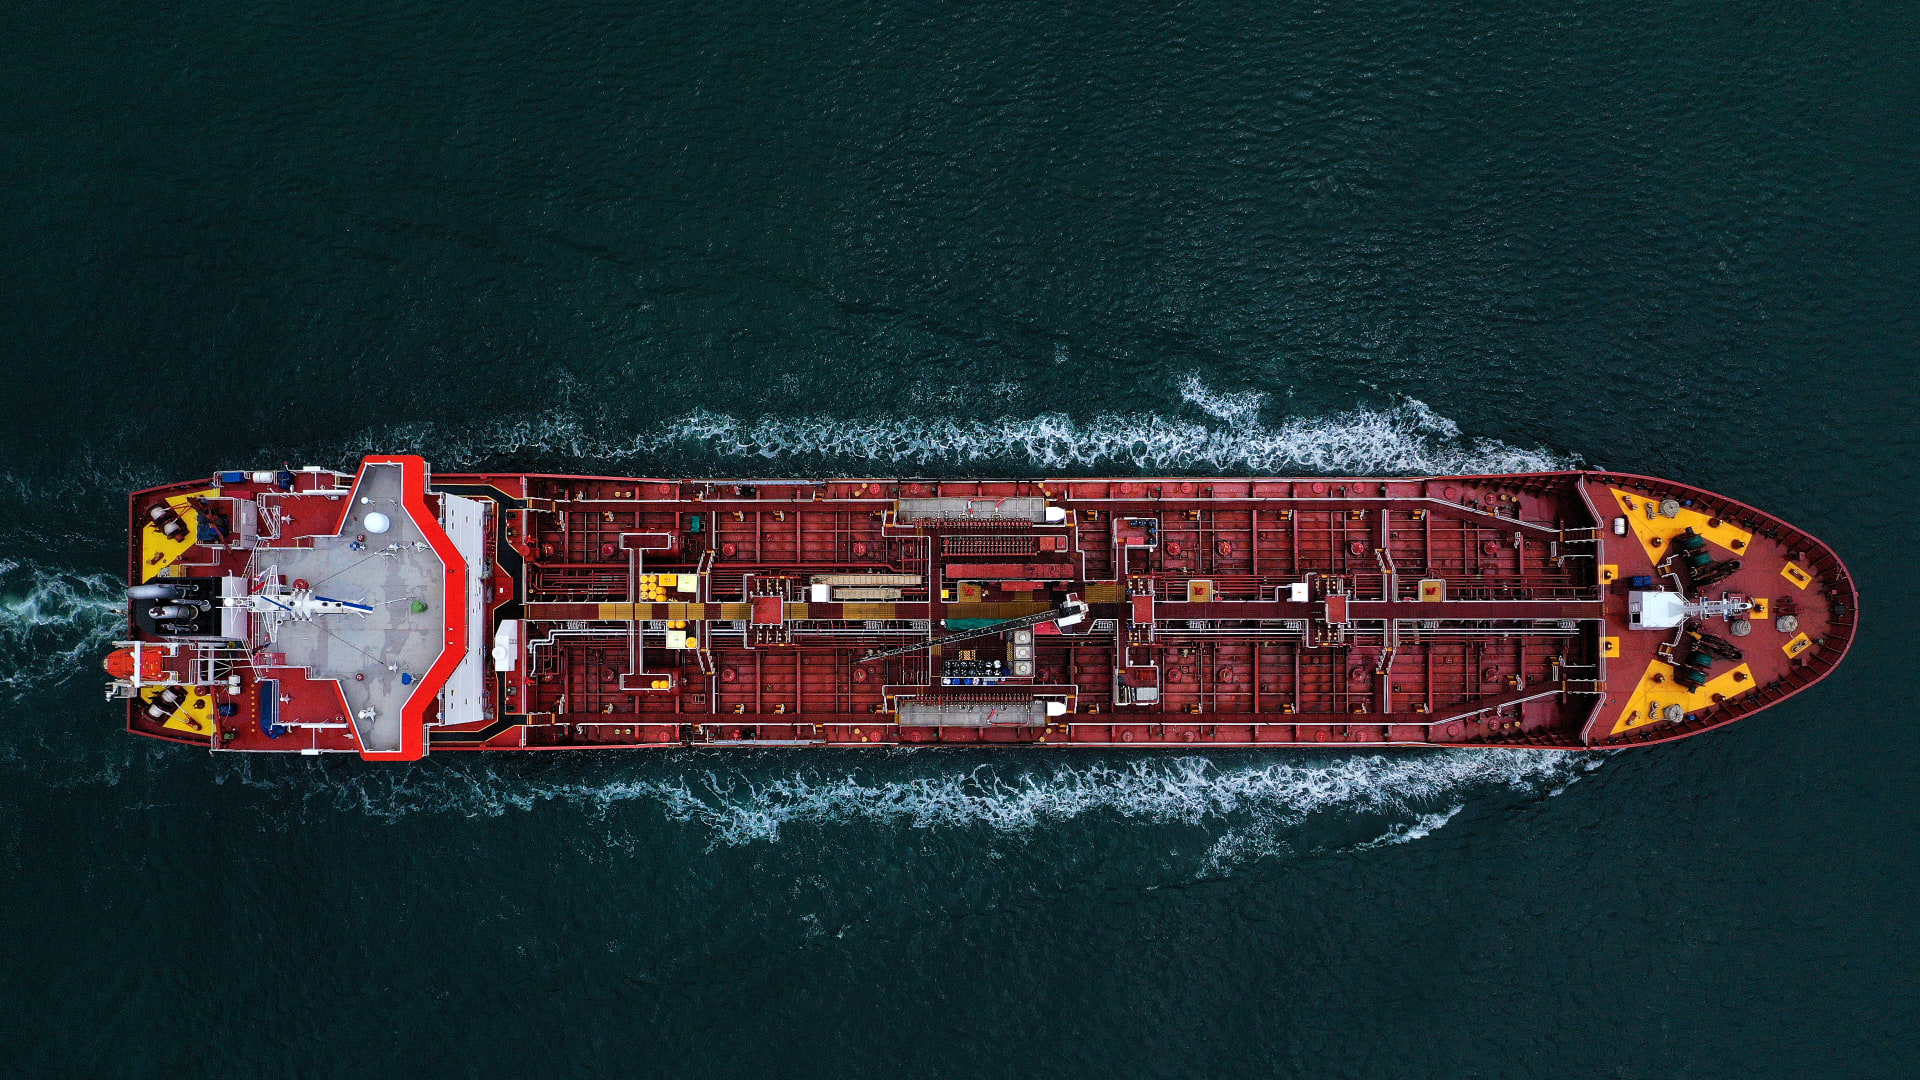 خطف سفينة تركية.. والقراصنة يجرون أول اتصال للشركة المالكة والطاقم